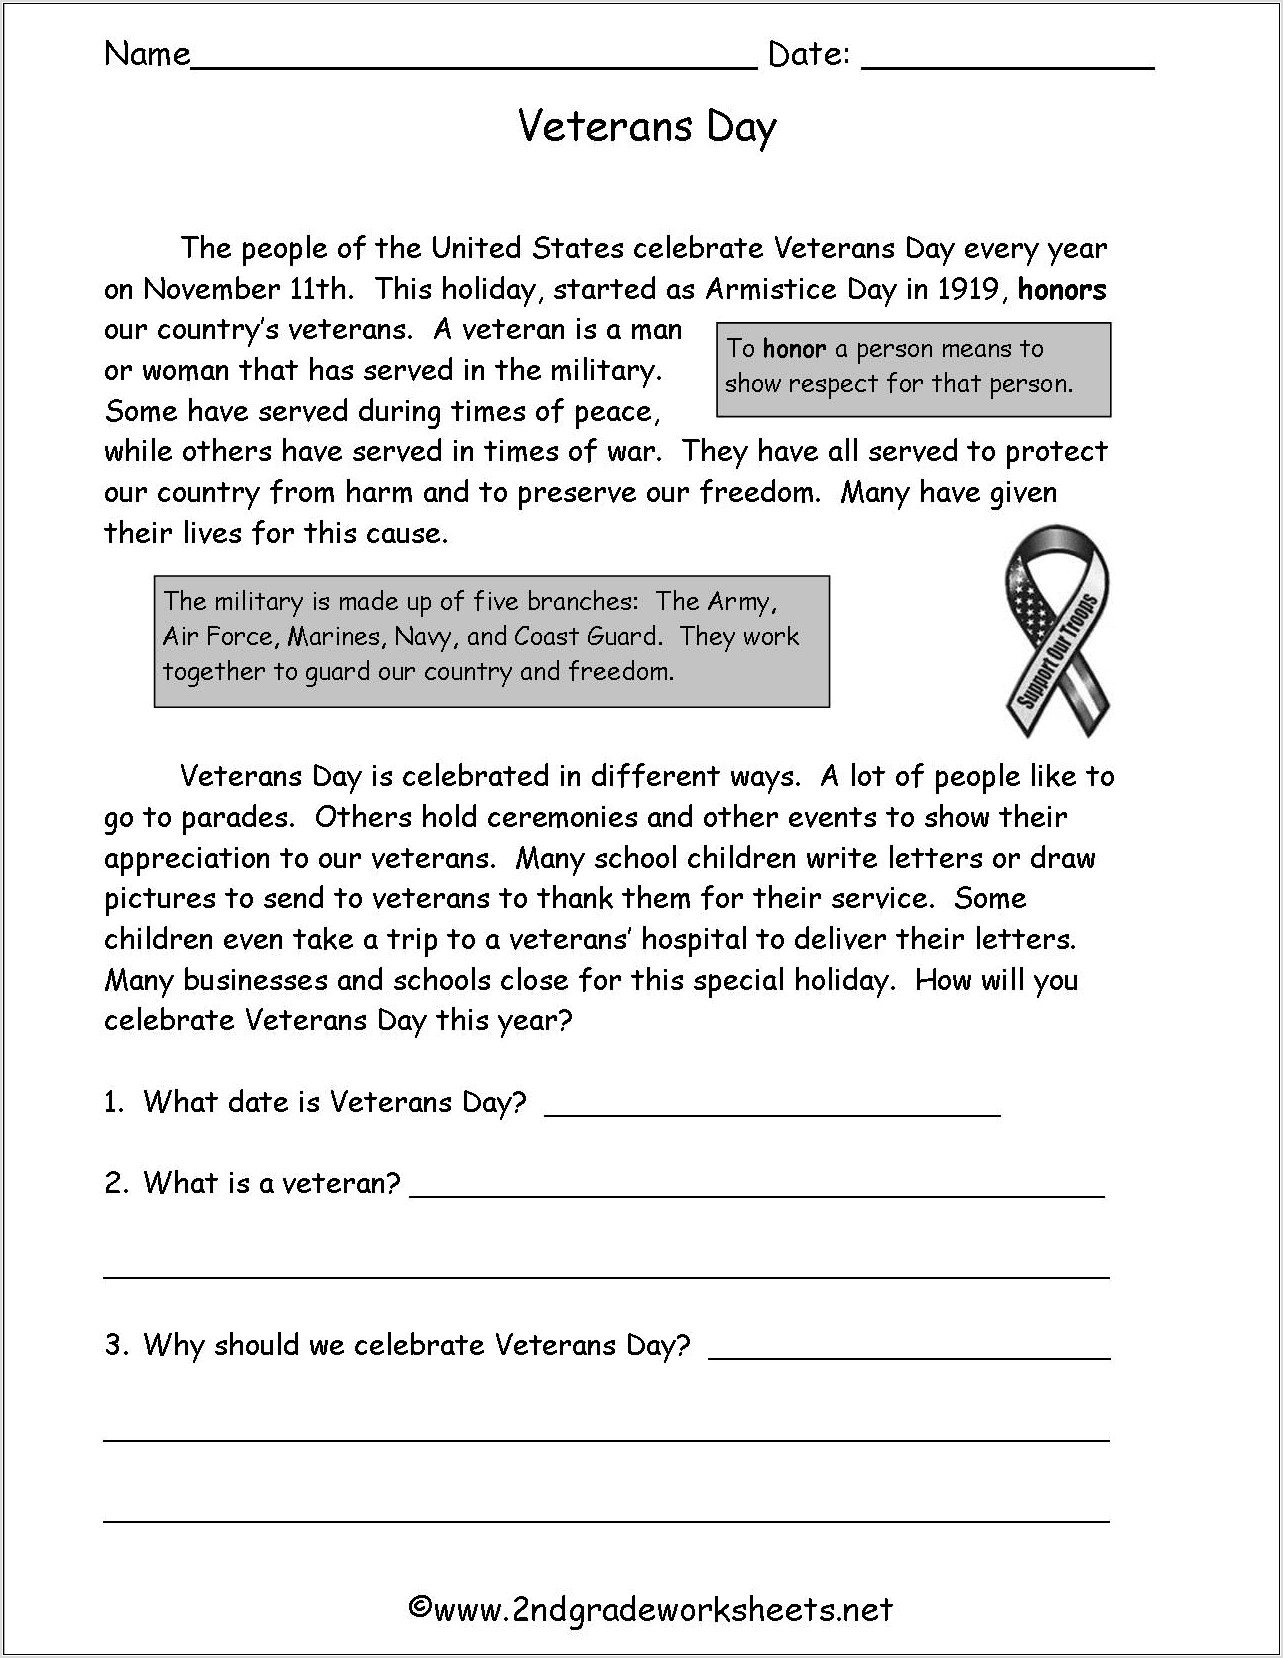 Veterans Day Worksheet For 2nd Grade